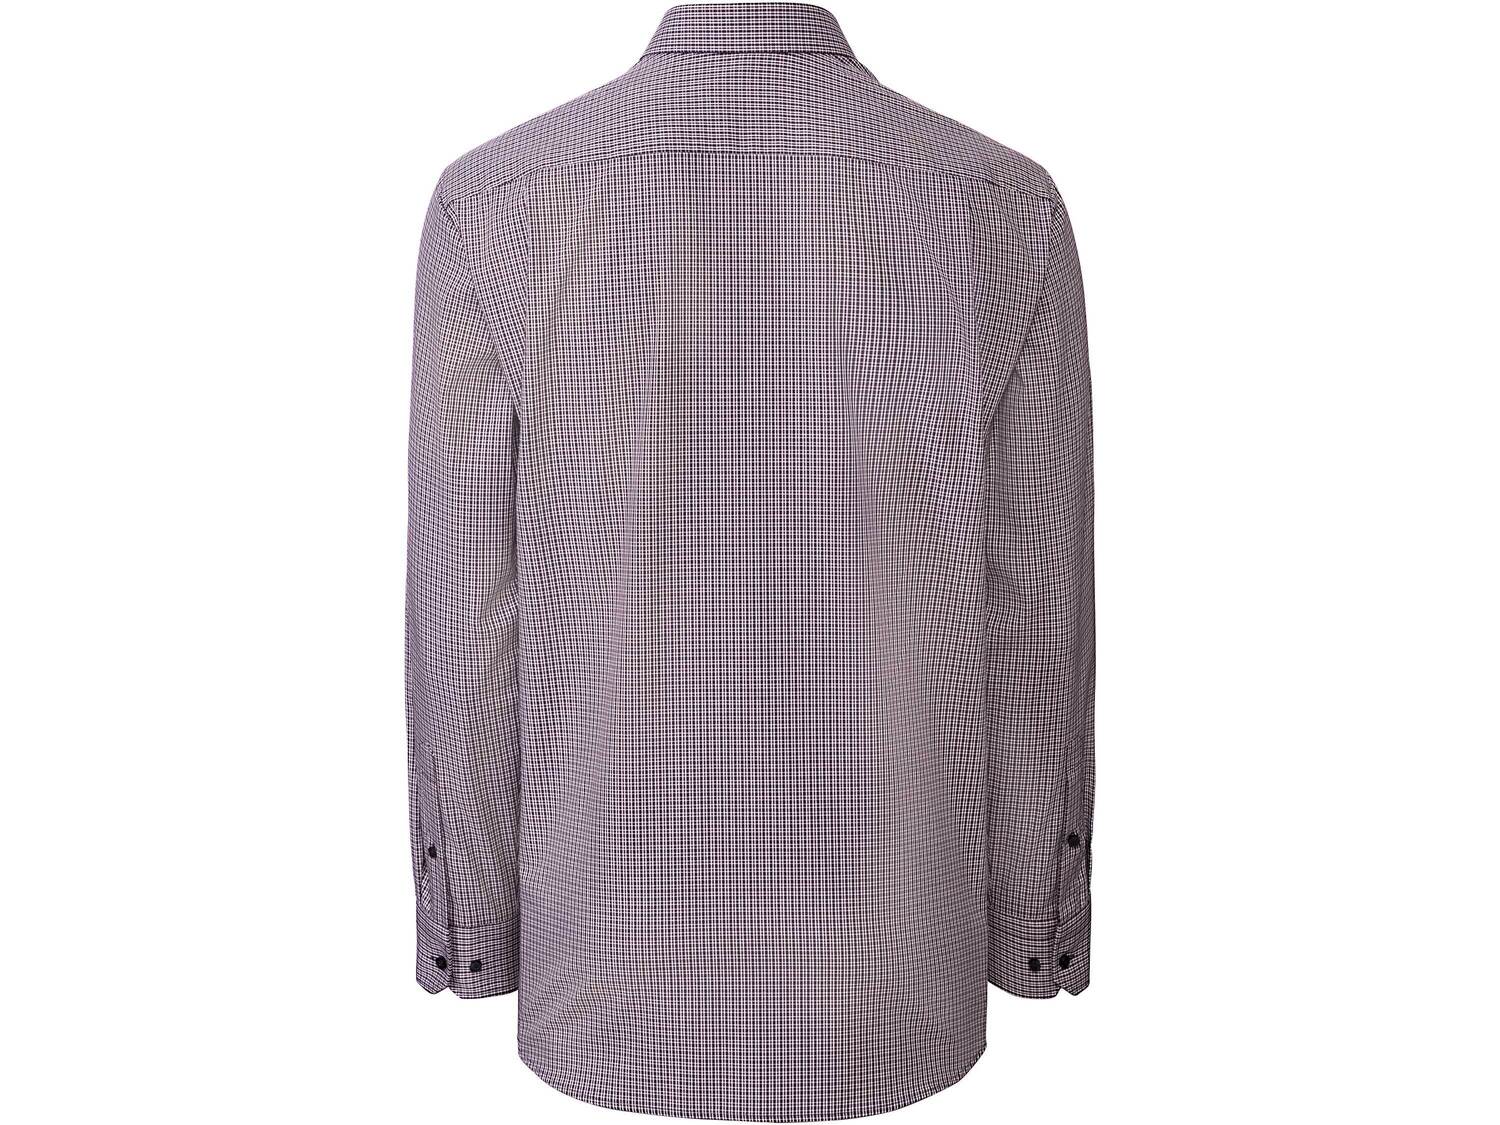 Koszula biznesowa , cena 49,99 PLN 
- rozmiary: 41-45
- 100% bawełny
- wkładki ...